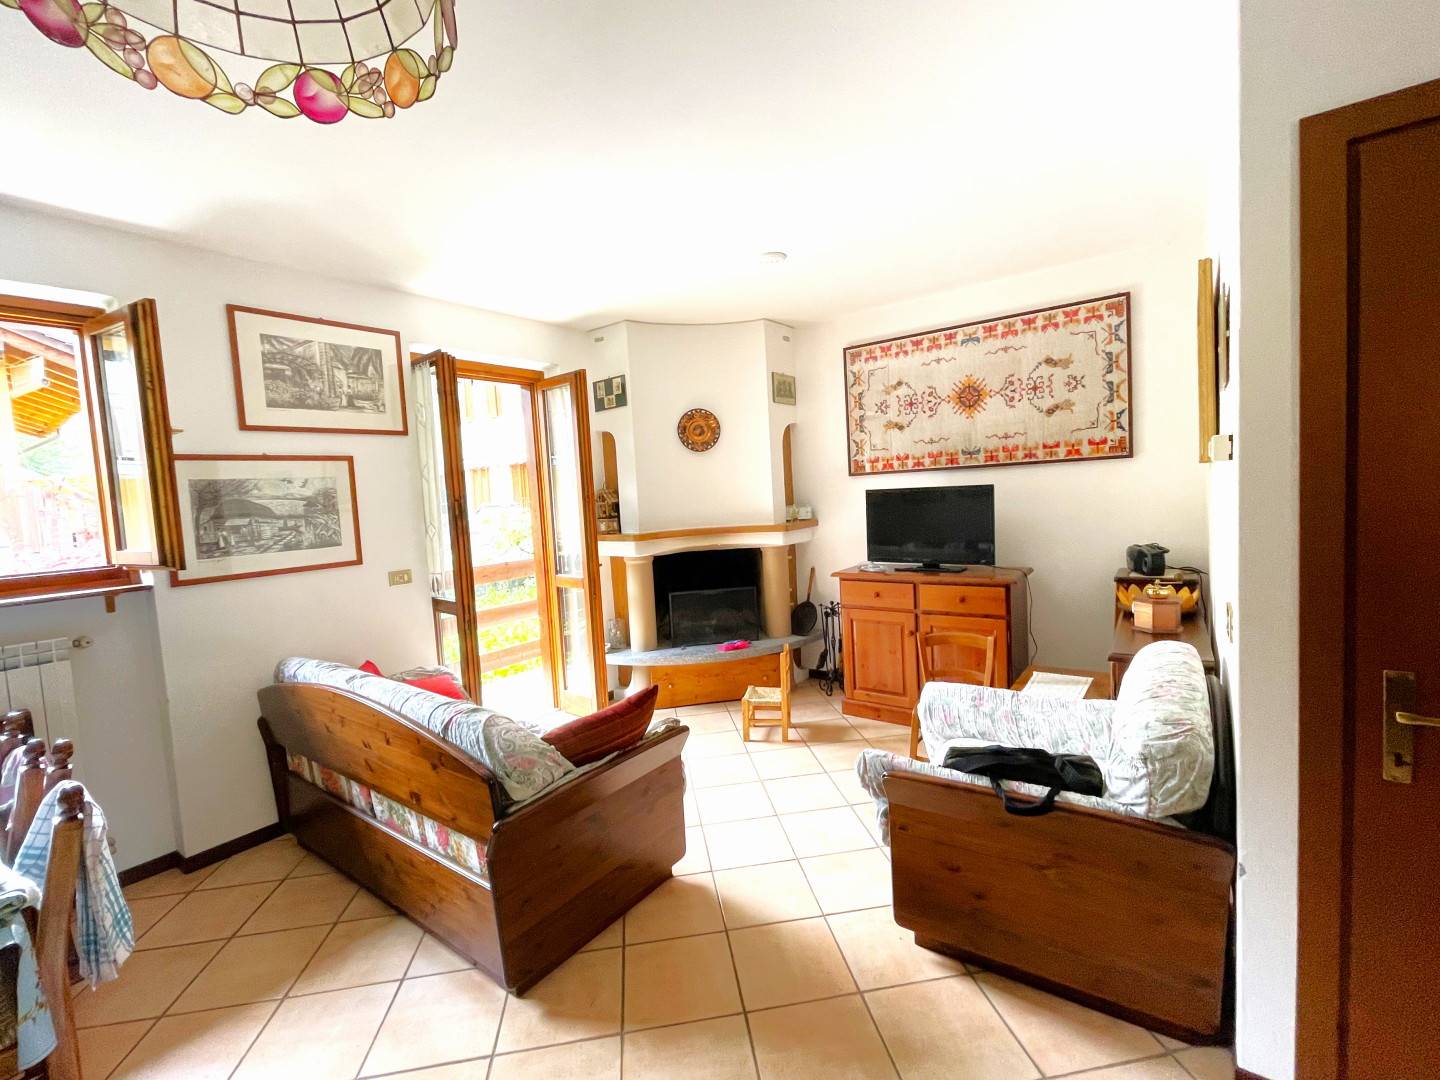 Soluzione Semindipendente in affitto a Cosio Valtellino, 4 locali, zona Zona: Sacco, prezzo € 900 | CambioCasa.it